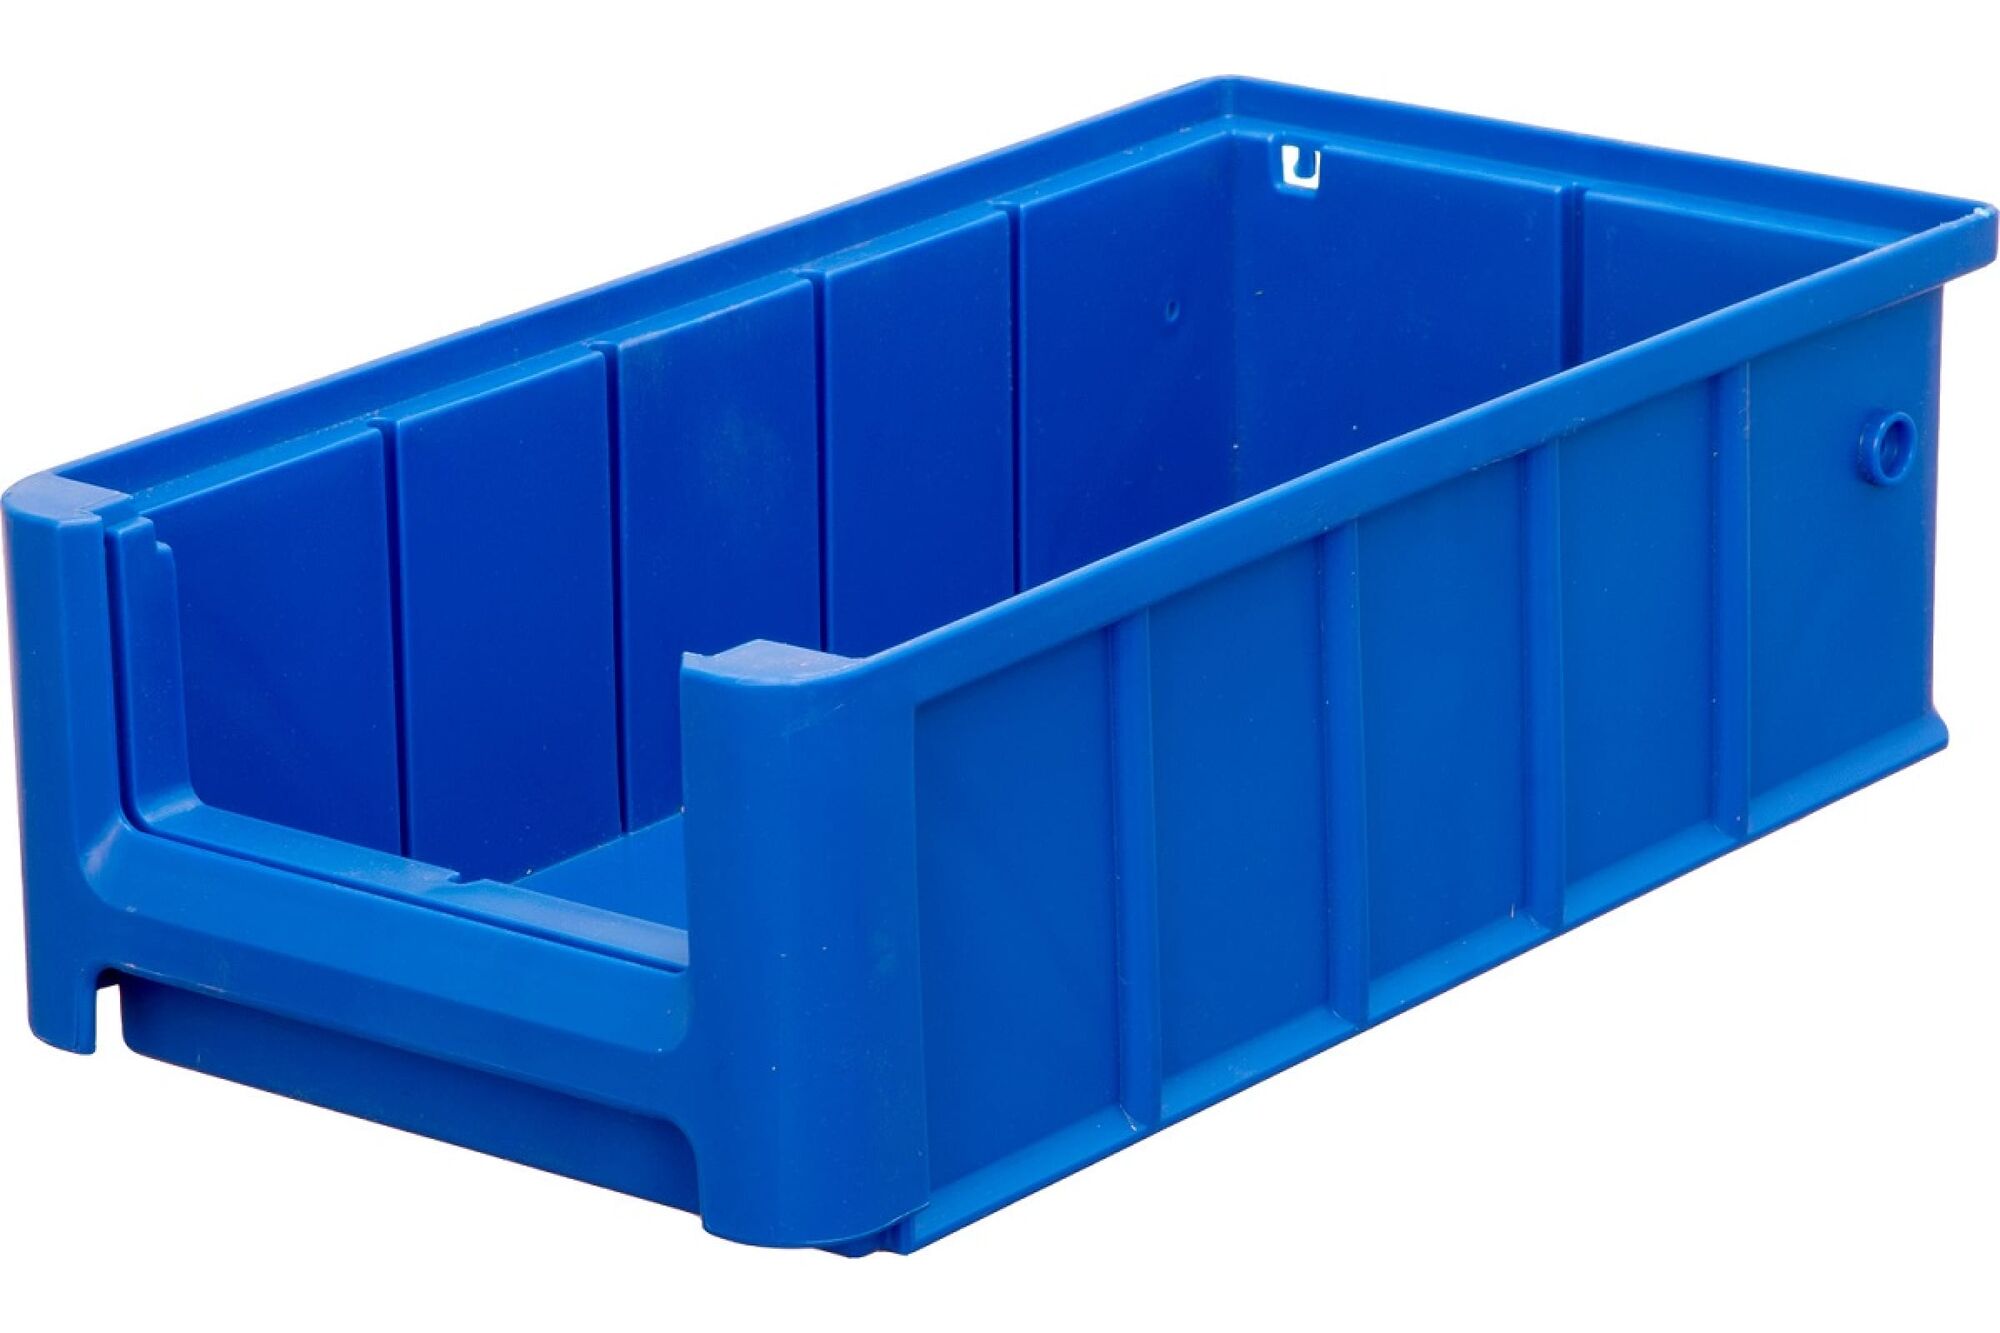 Полочный контейнер Тара.ру 300x155x90 синий 12368